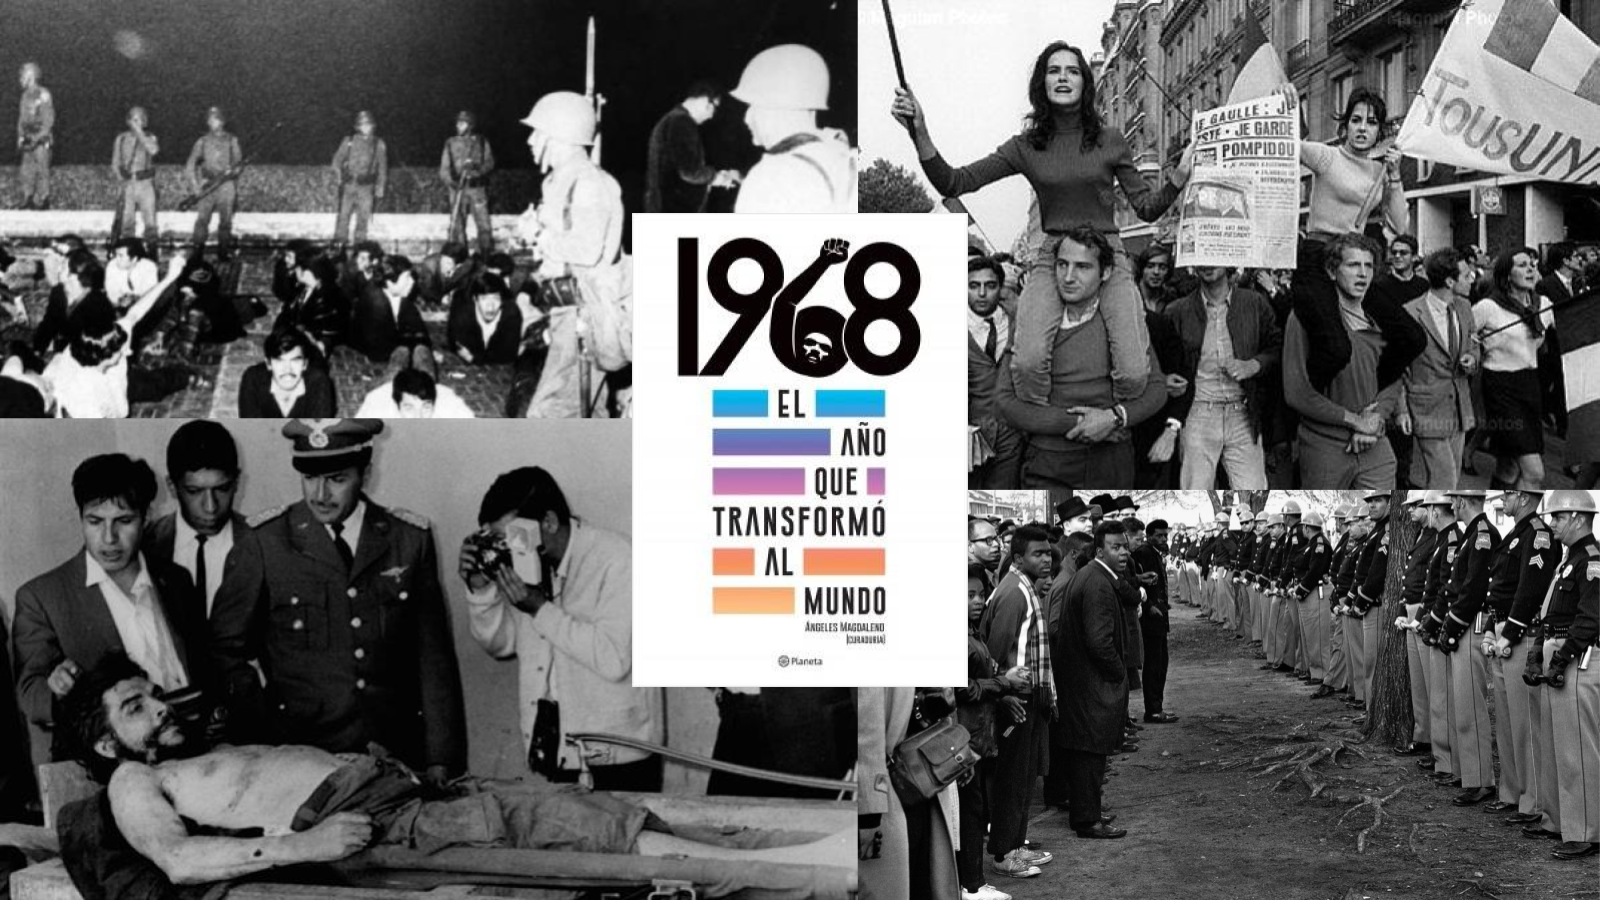 RESEÑA: 1968, El año que transformó al mundo